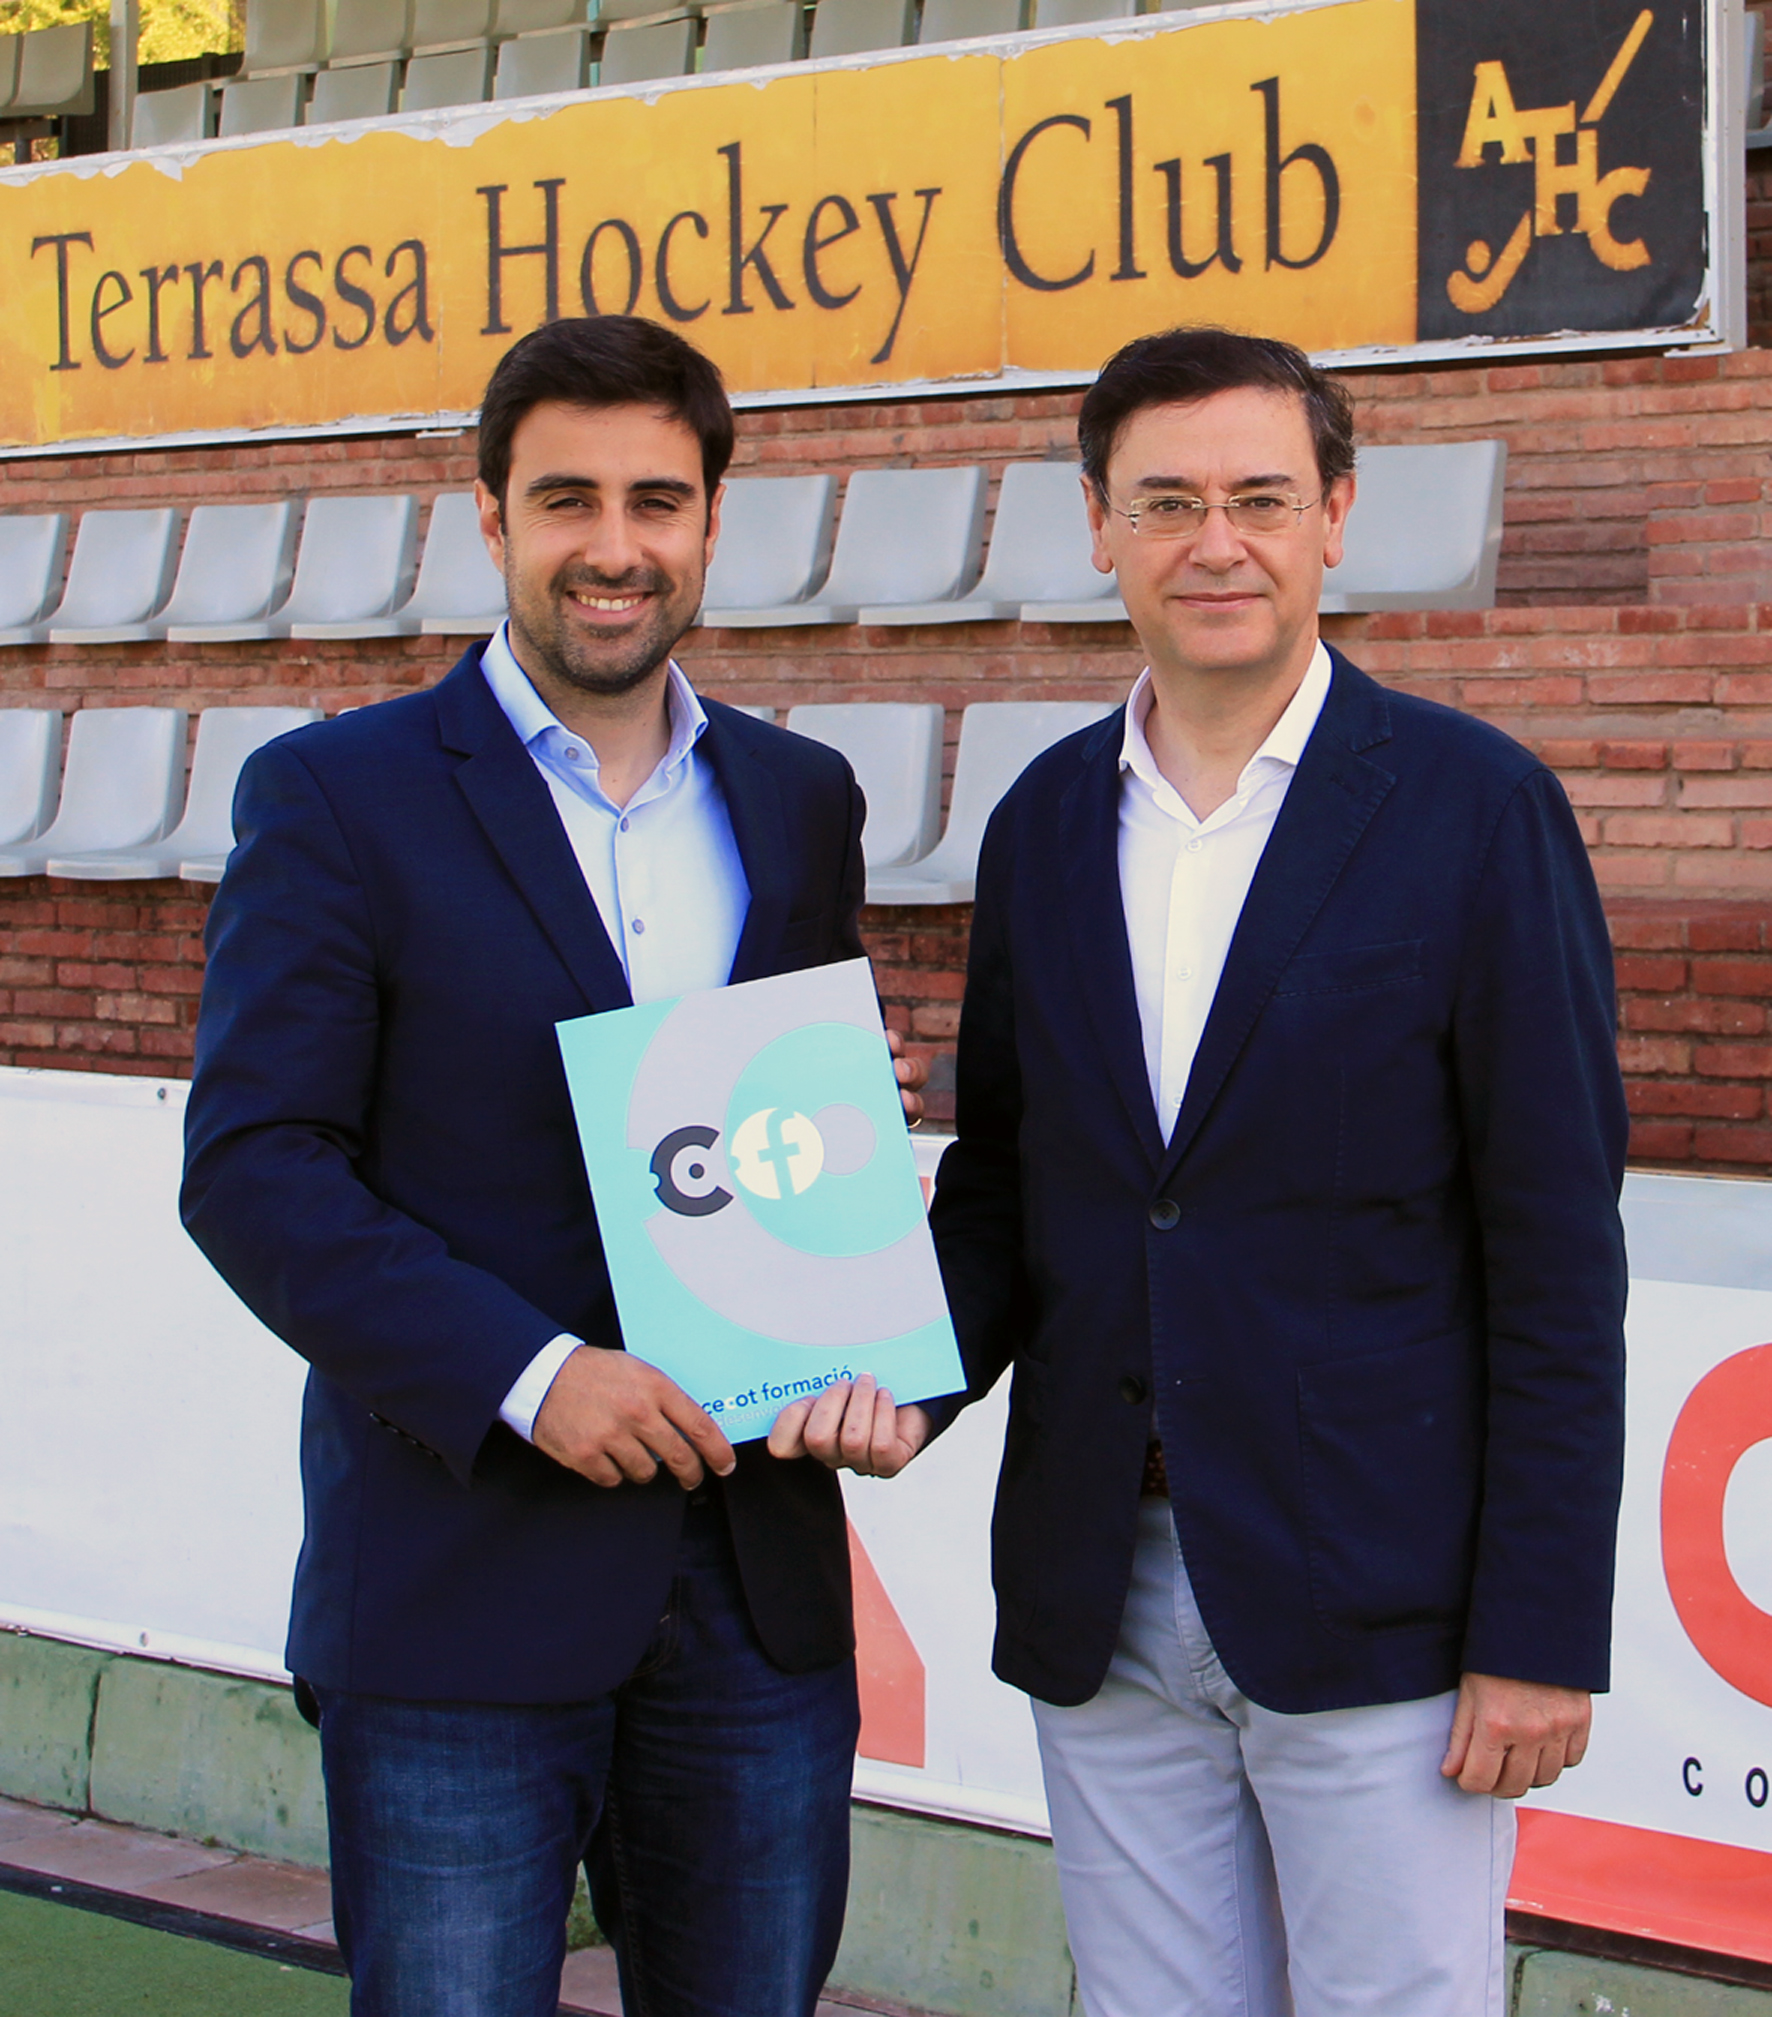 Cecot Formació i l’Atlètic Terrassa Hockey Club utilitzaran l’esport com a eina de valor en la formació empresarial